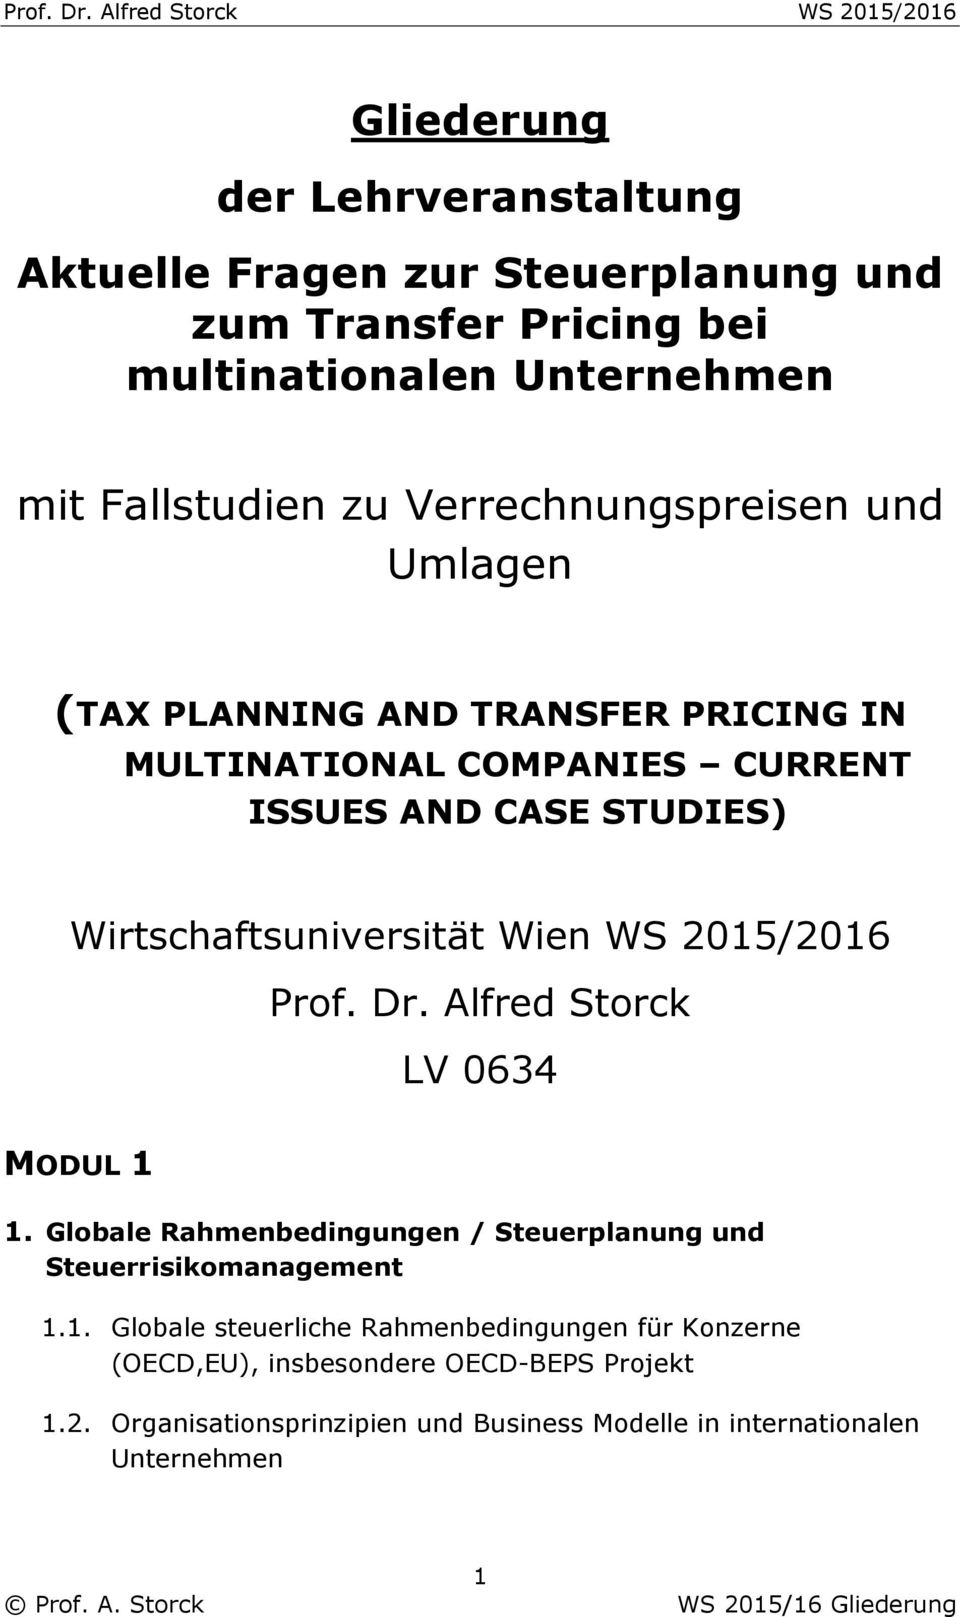 Wien WS 2015/2016 Prof. Dr. Alfred Storck LV 0634 MODUL 1 1. Globale Rahmenbedingungen / Steuerplanung und Steuerrisikomanagement 1.1. Globale steuerliche Rahmenbedingungen für Konzerne (OECD,EU), insbesondere OECD-BEPS Projekt 1.